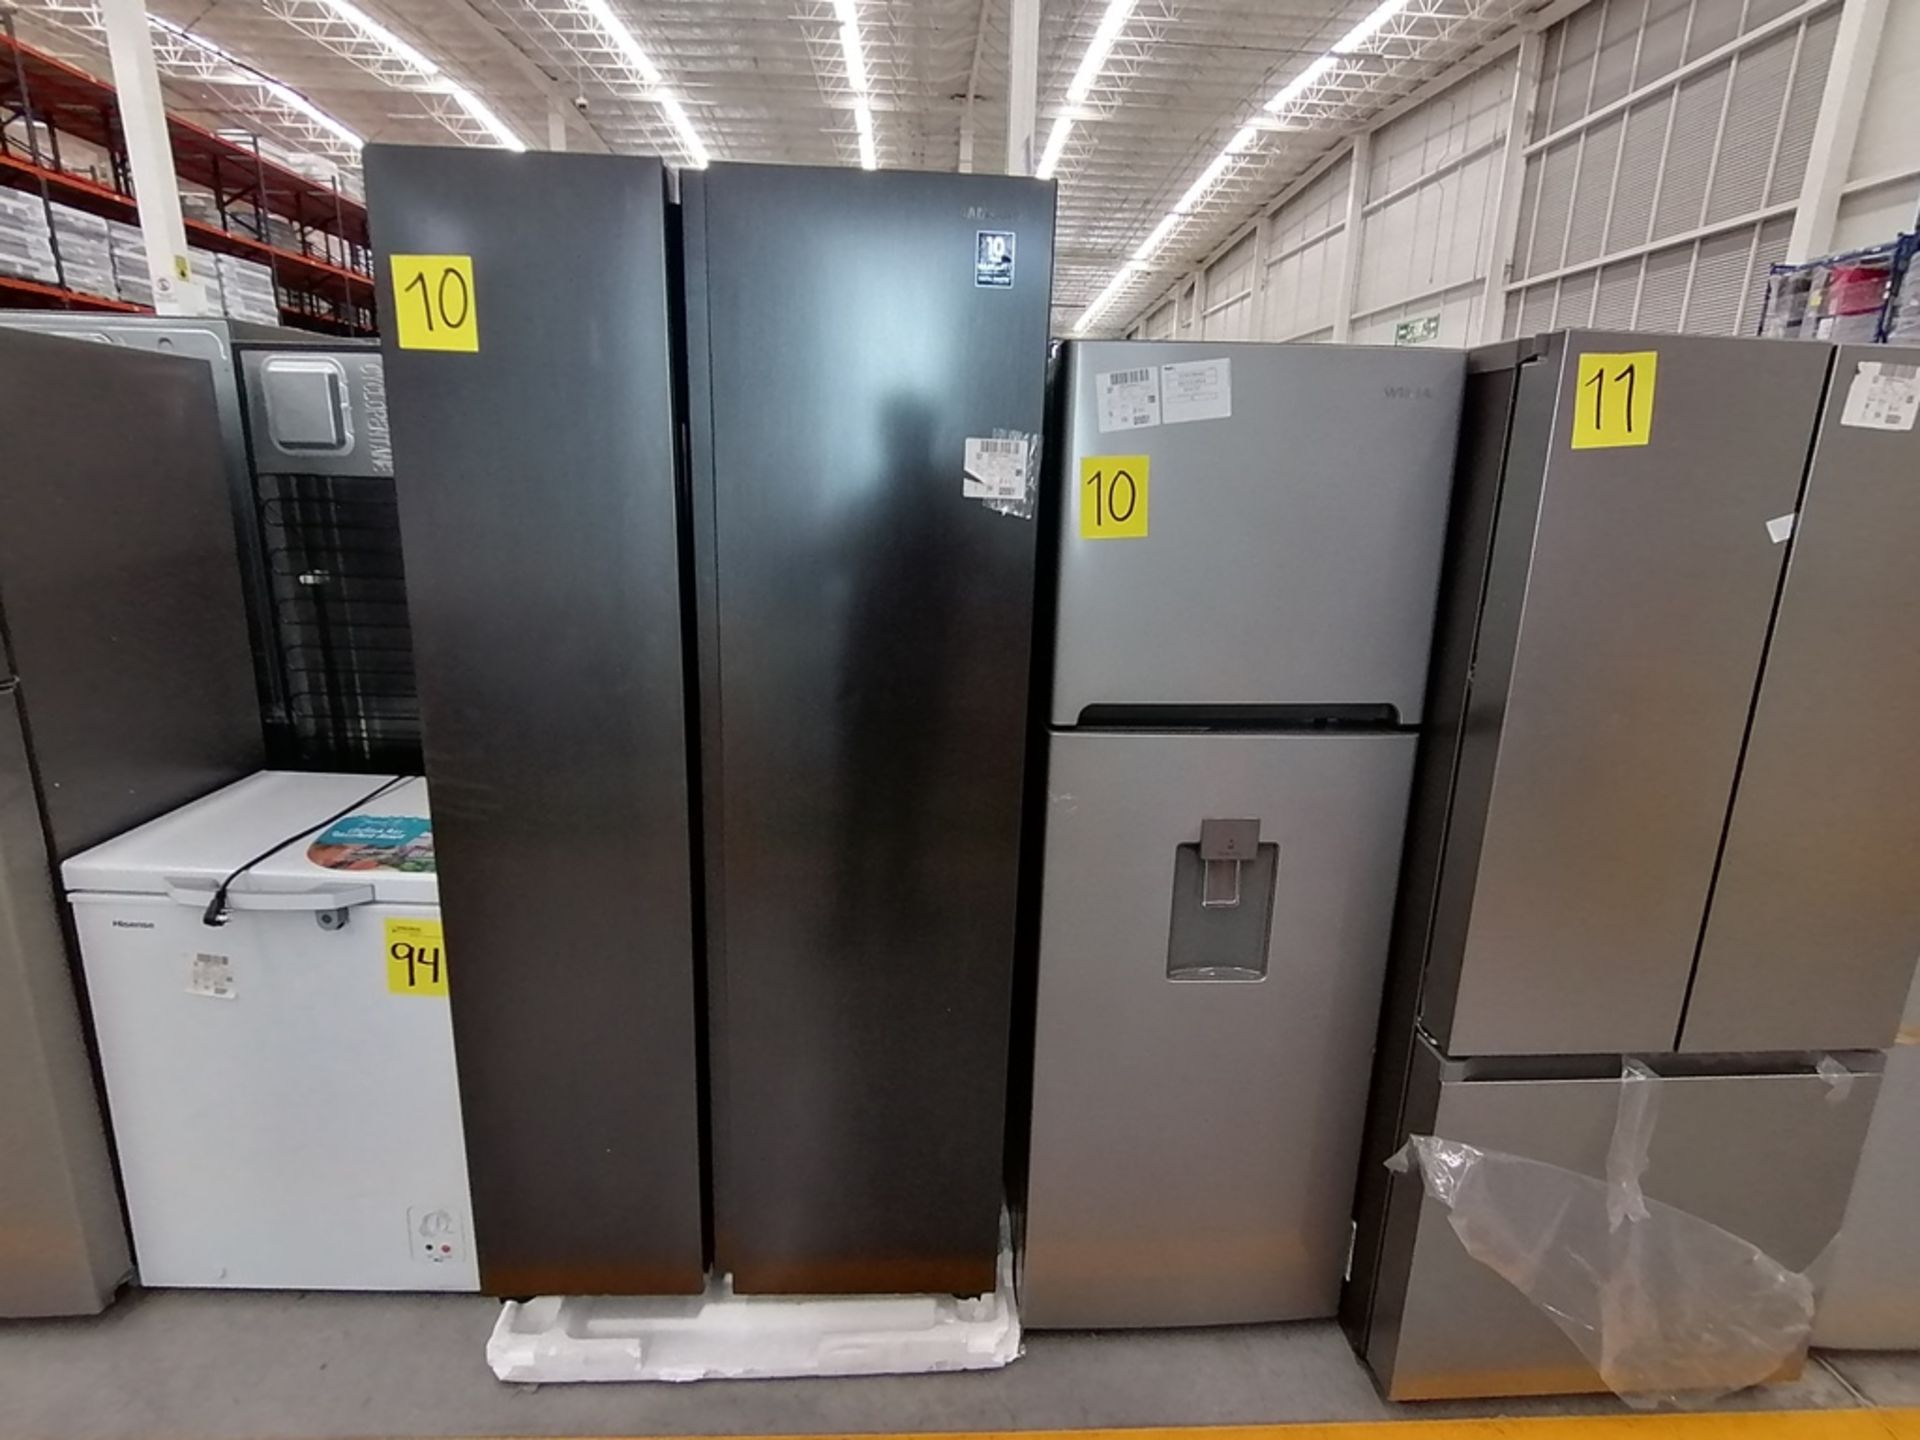 Lote de 2 refrigeradores incluye: 1 Refrigerador, Marca Samsung, Modelo RS28T5B00B1, Serie 0B2V4BAR - Image 9 of 13